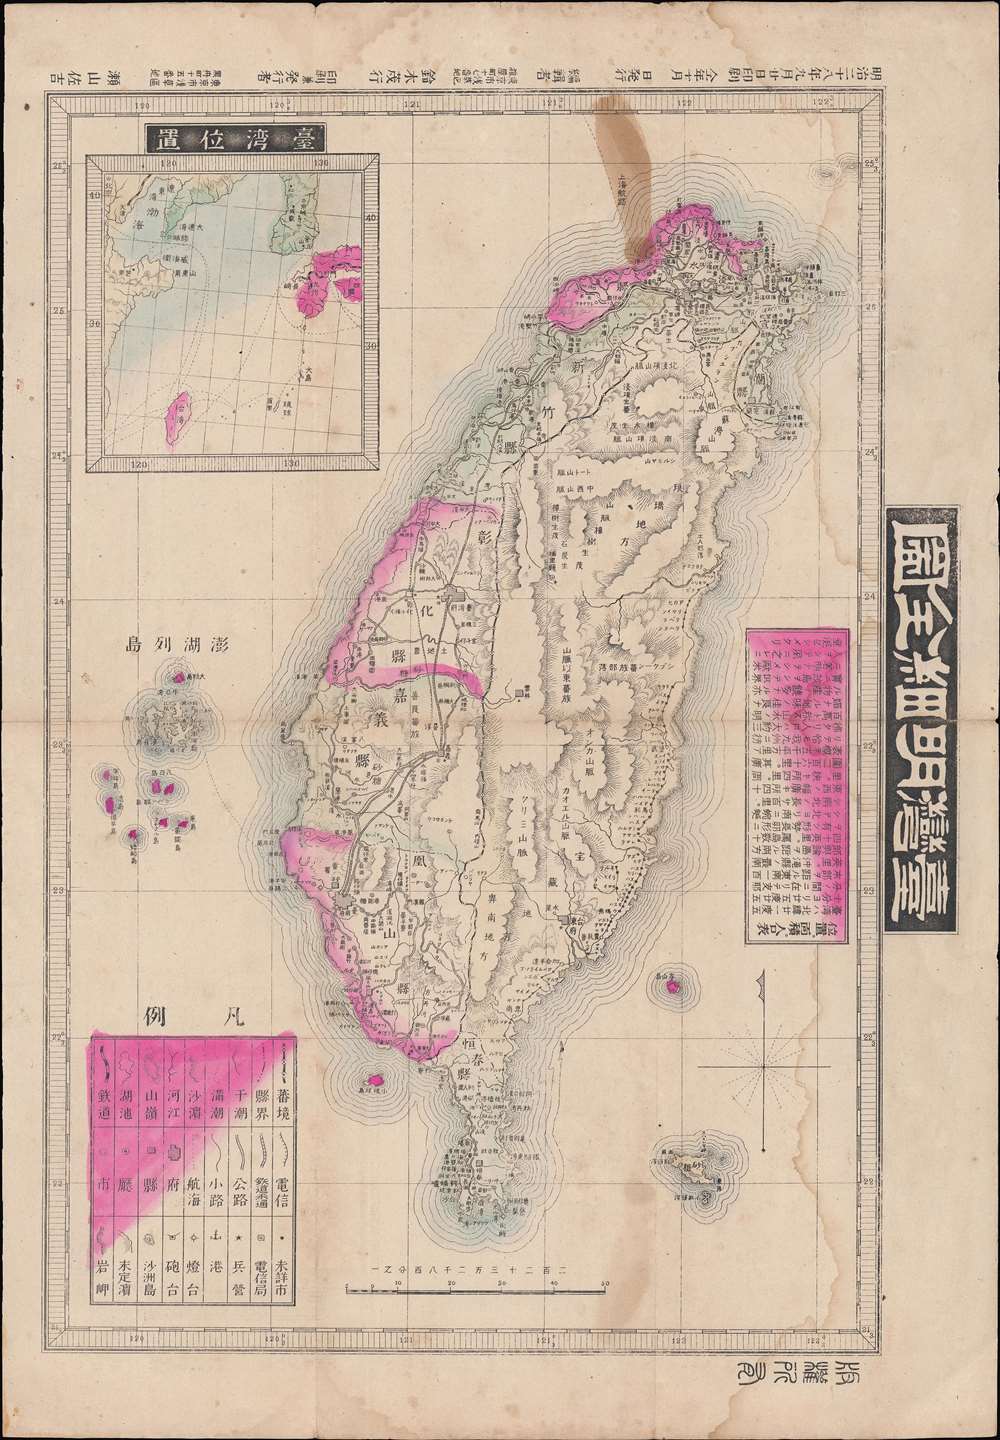 臺灣明細全圖 / [Complete and Detailed Map of Taiwan]. - Main View